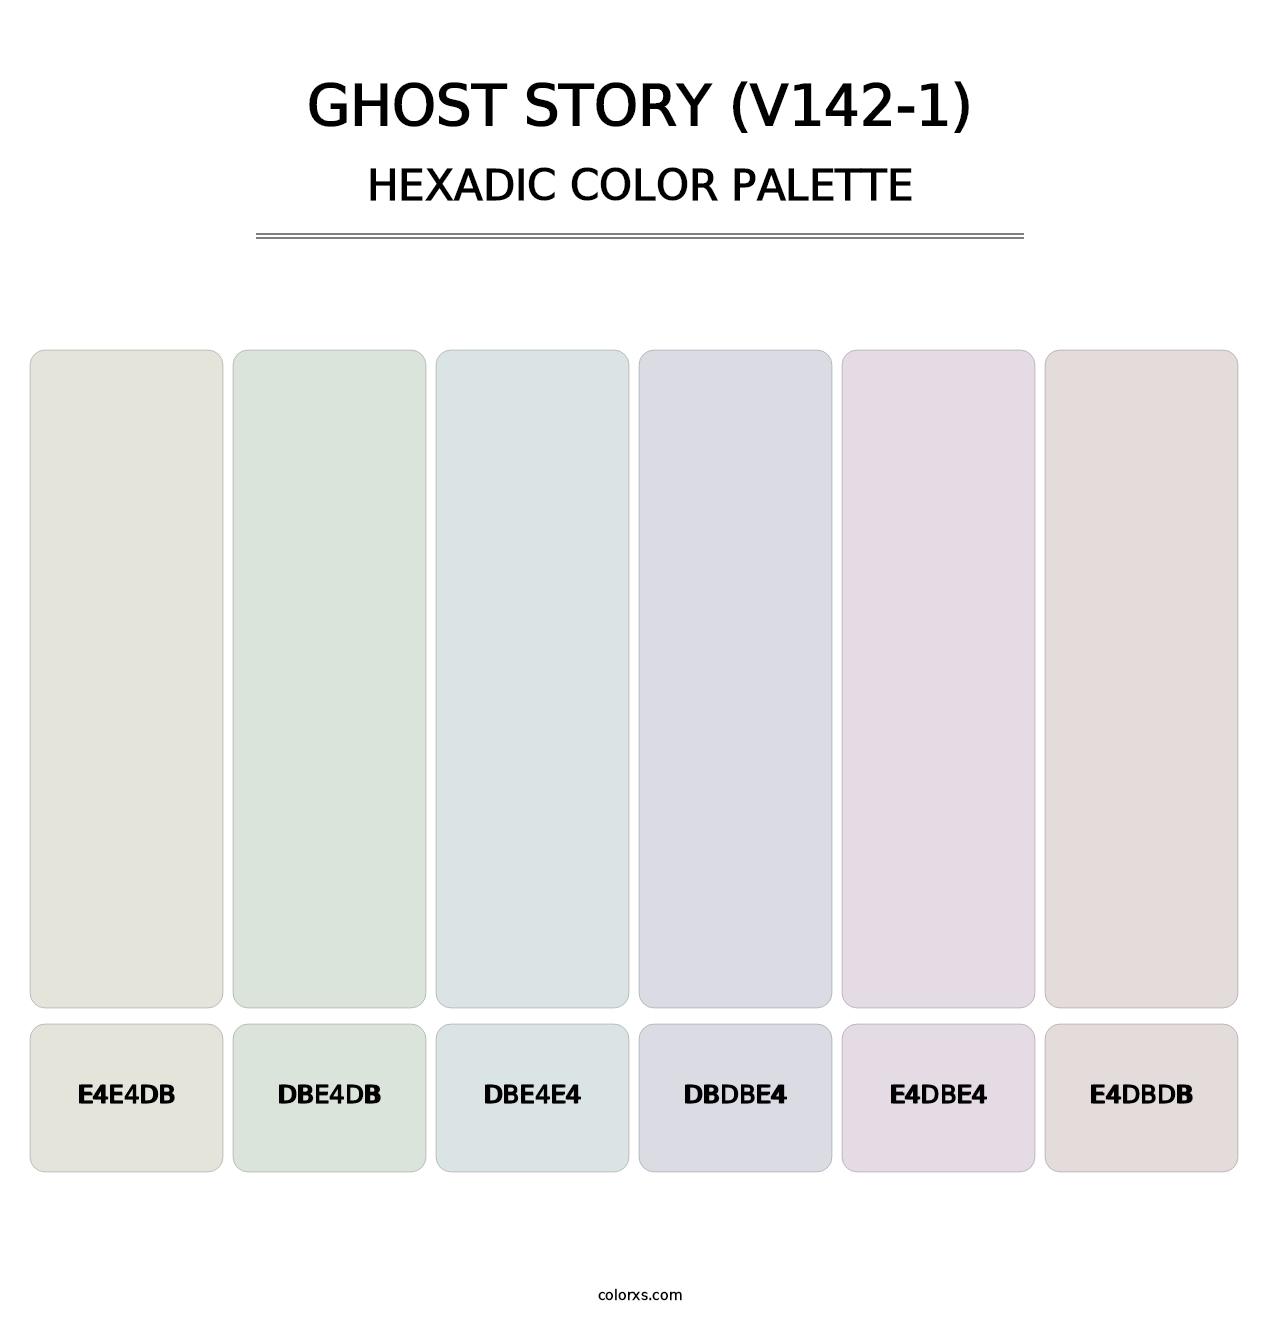 Ghost Story (V142-1) - Hexadic Color Palette